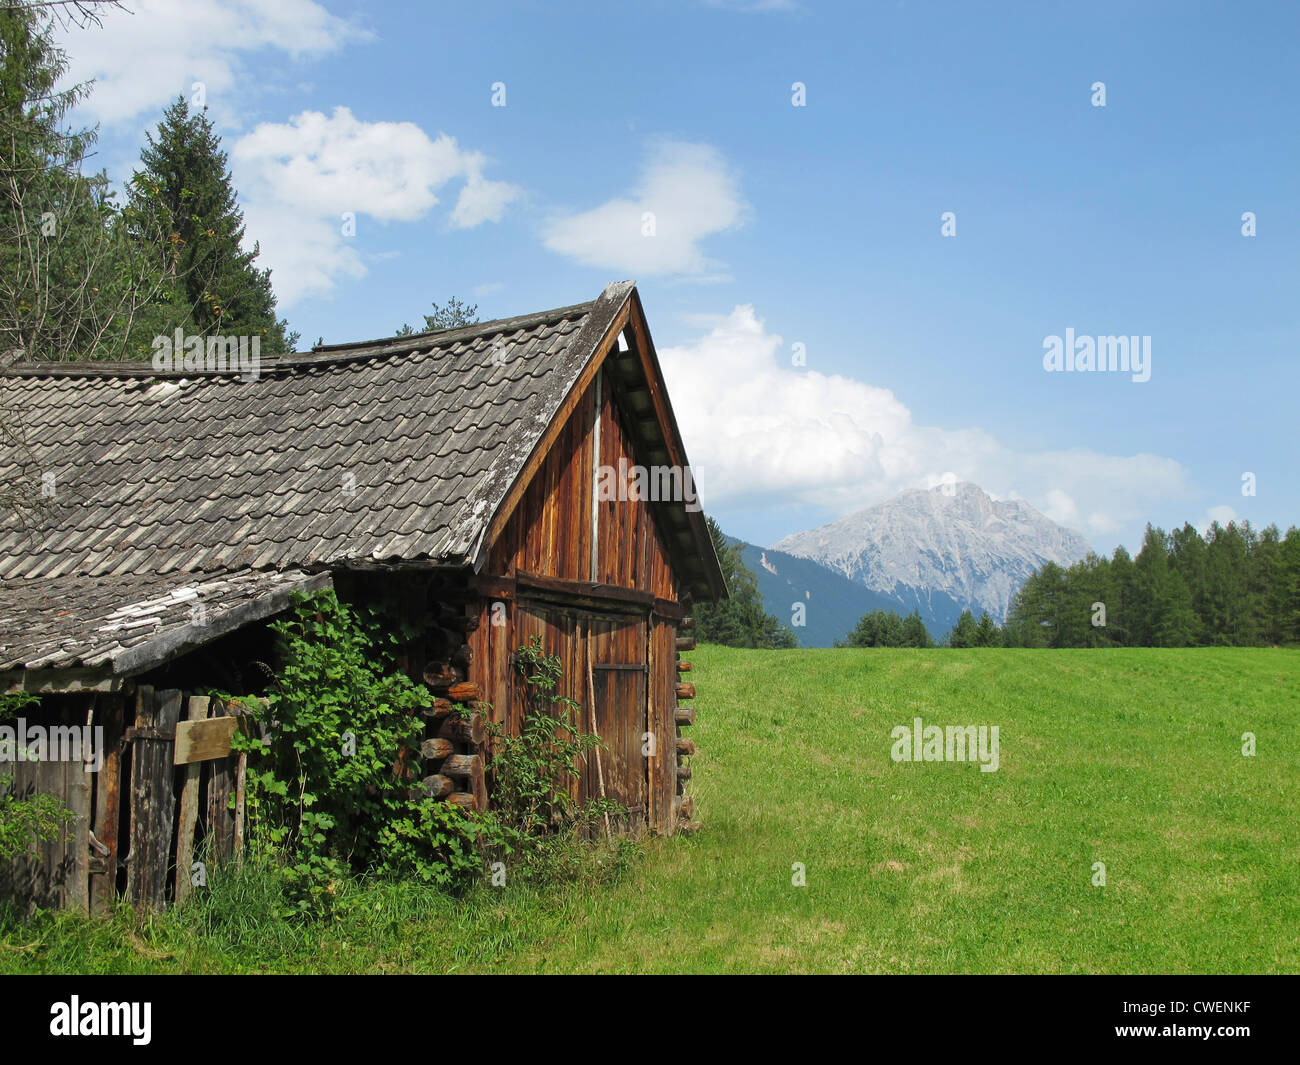 Une ancienne cabane de montagne, dans les alpes tyroliennes près d'Innsbruck. Photographié à Obsteig au Mieminger Plateau du soleil. Banque D'Images